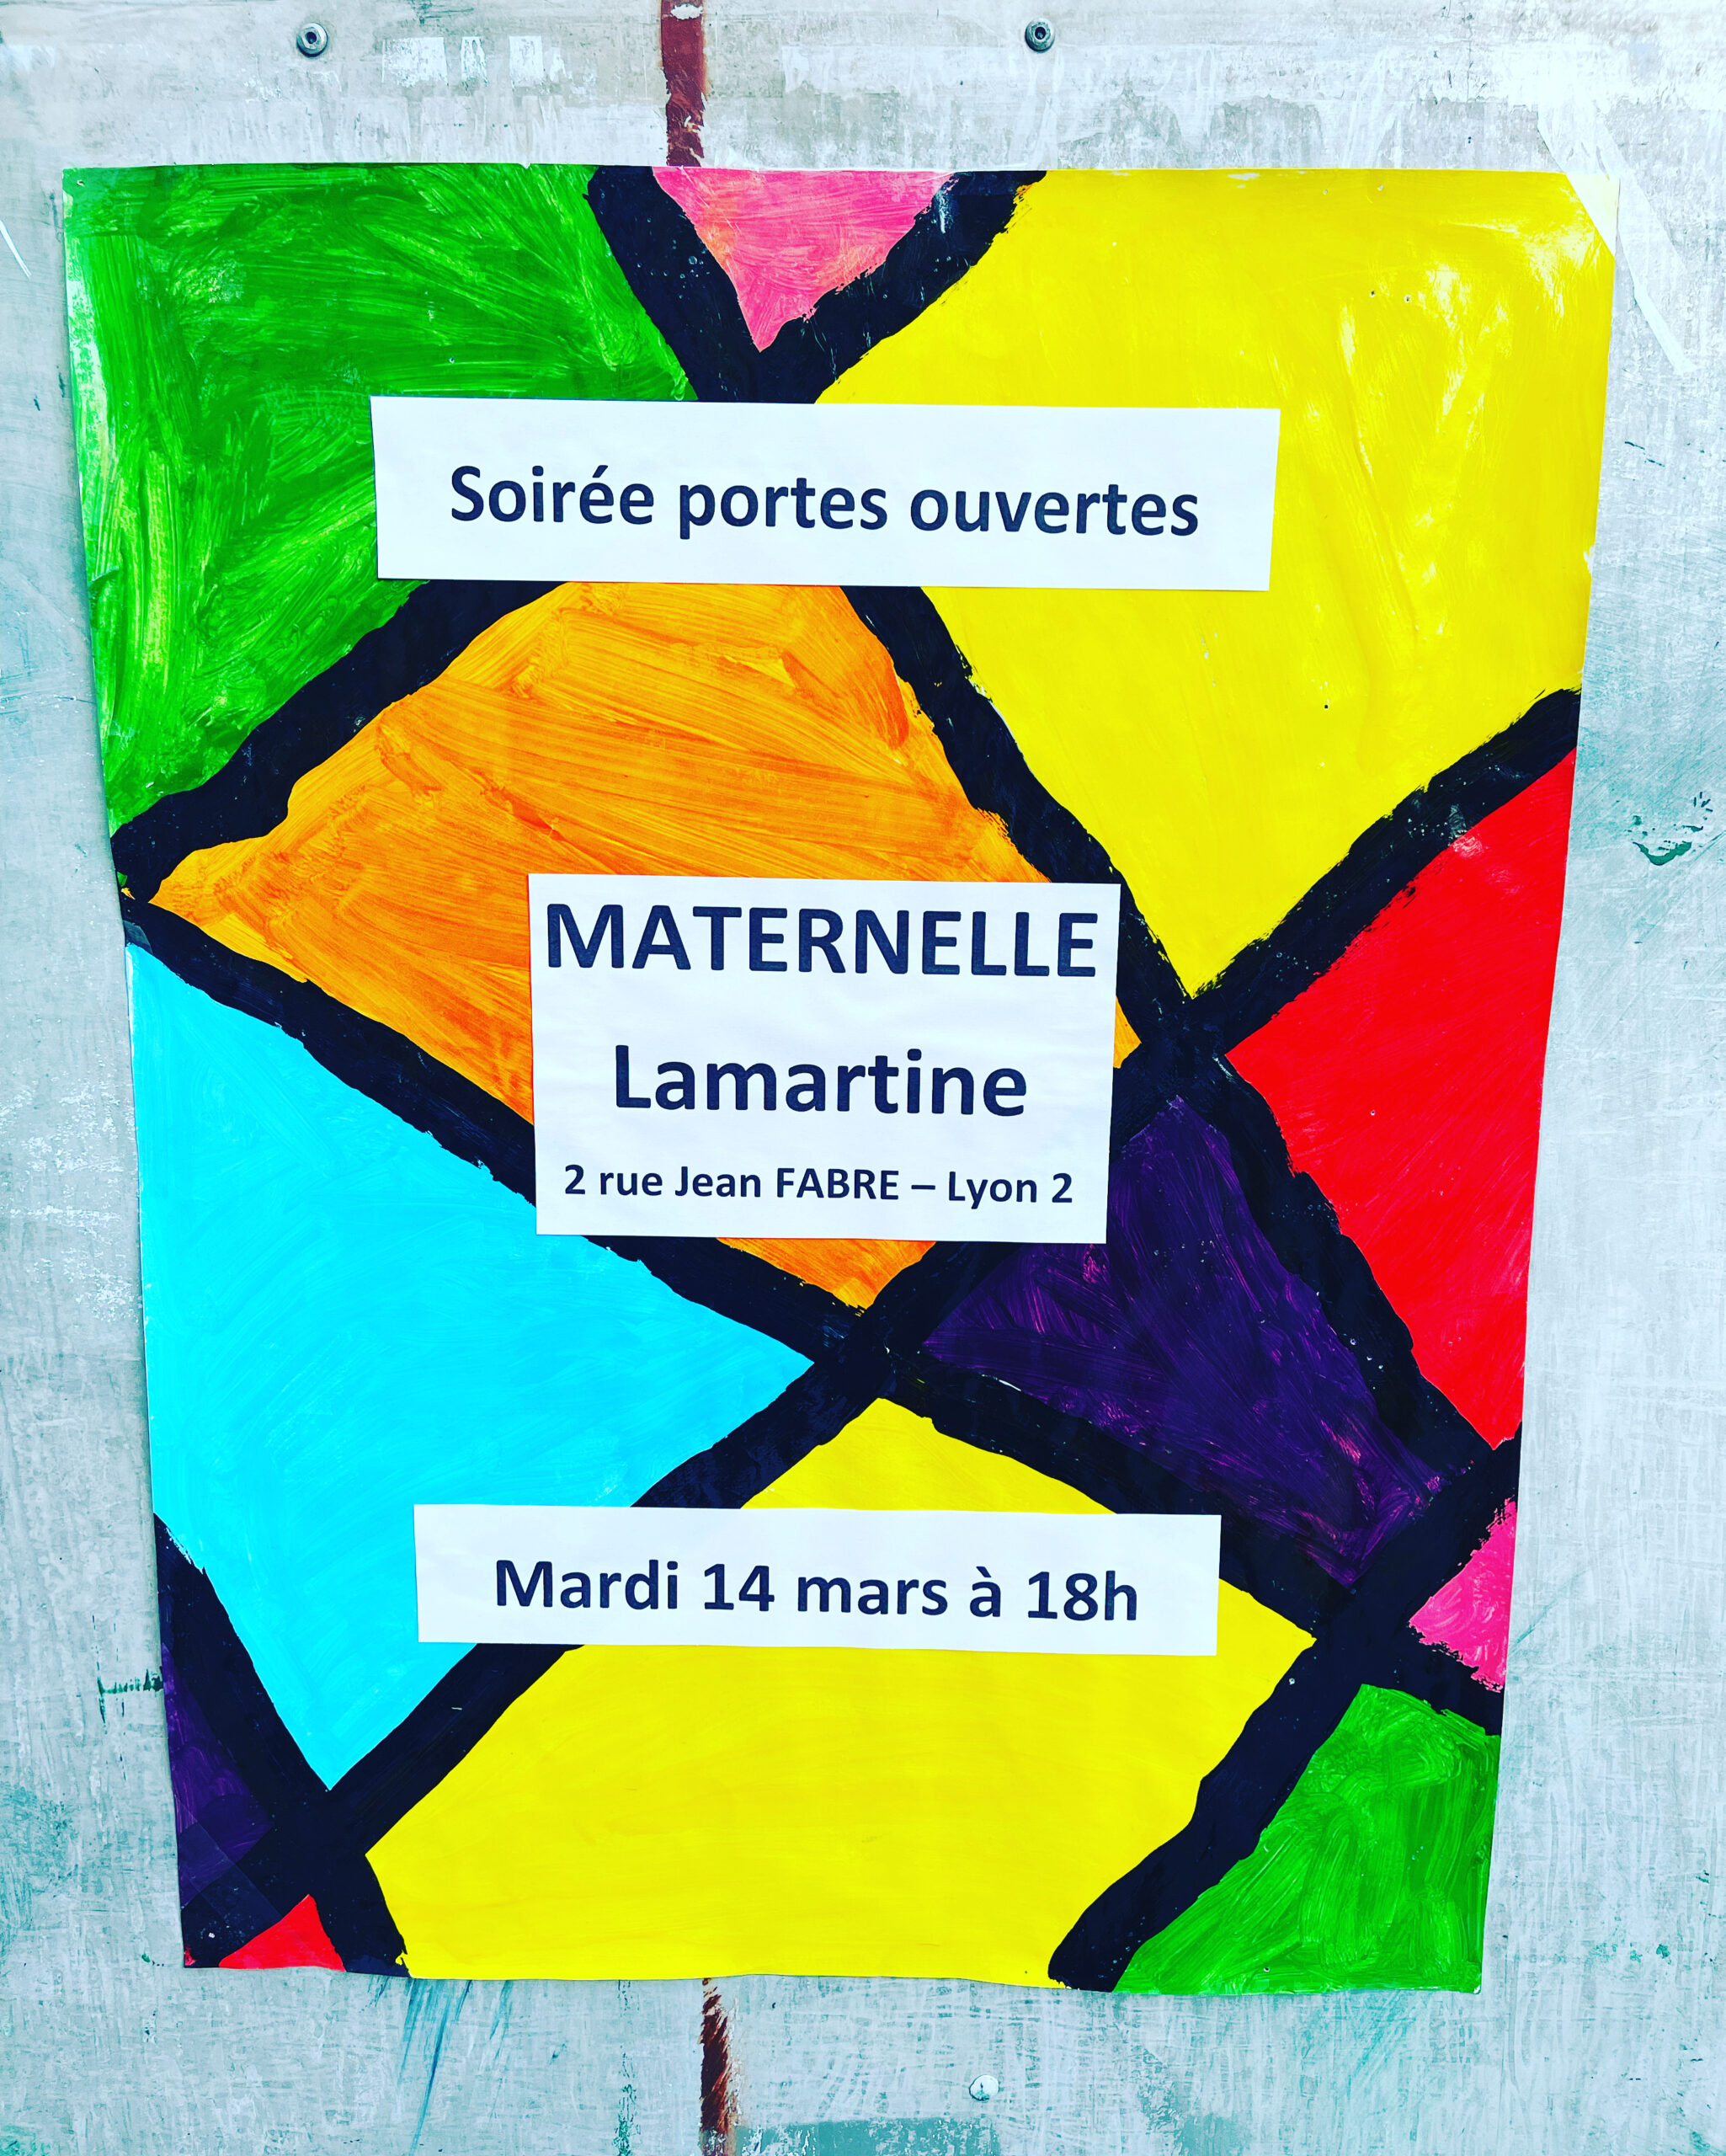 Soirée portes ouvertes maternelle Lamartine — mardi 14 mars 18 heures